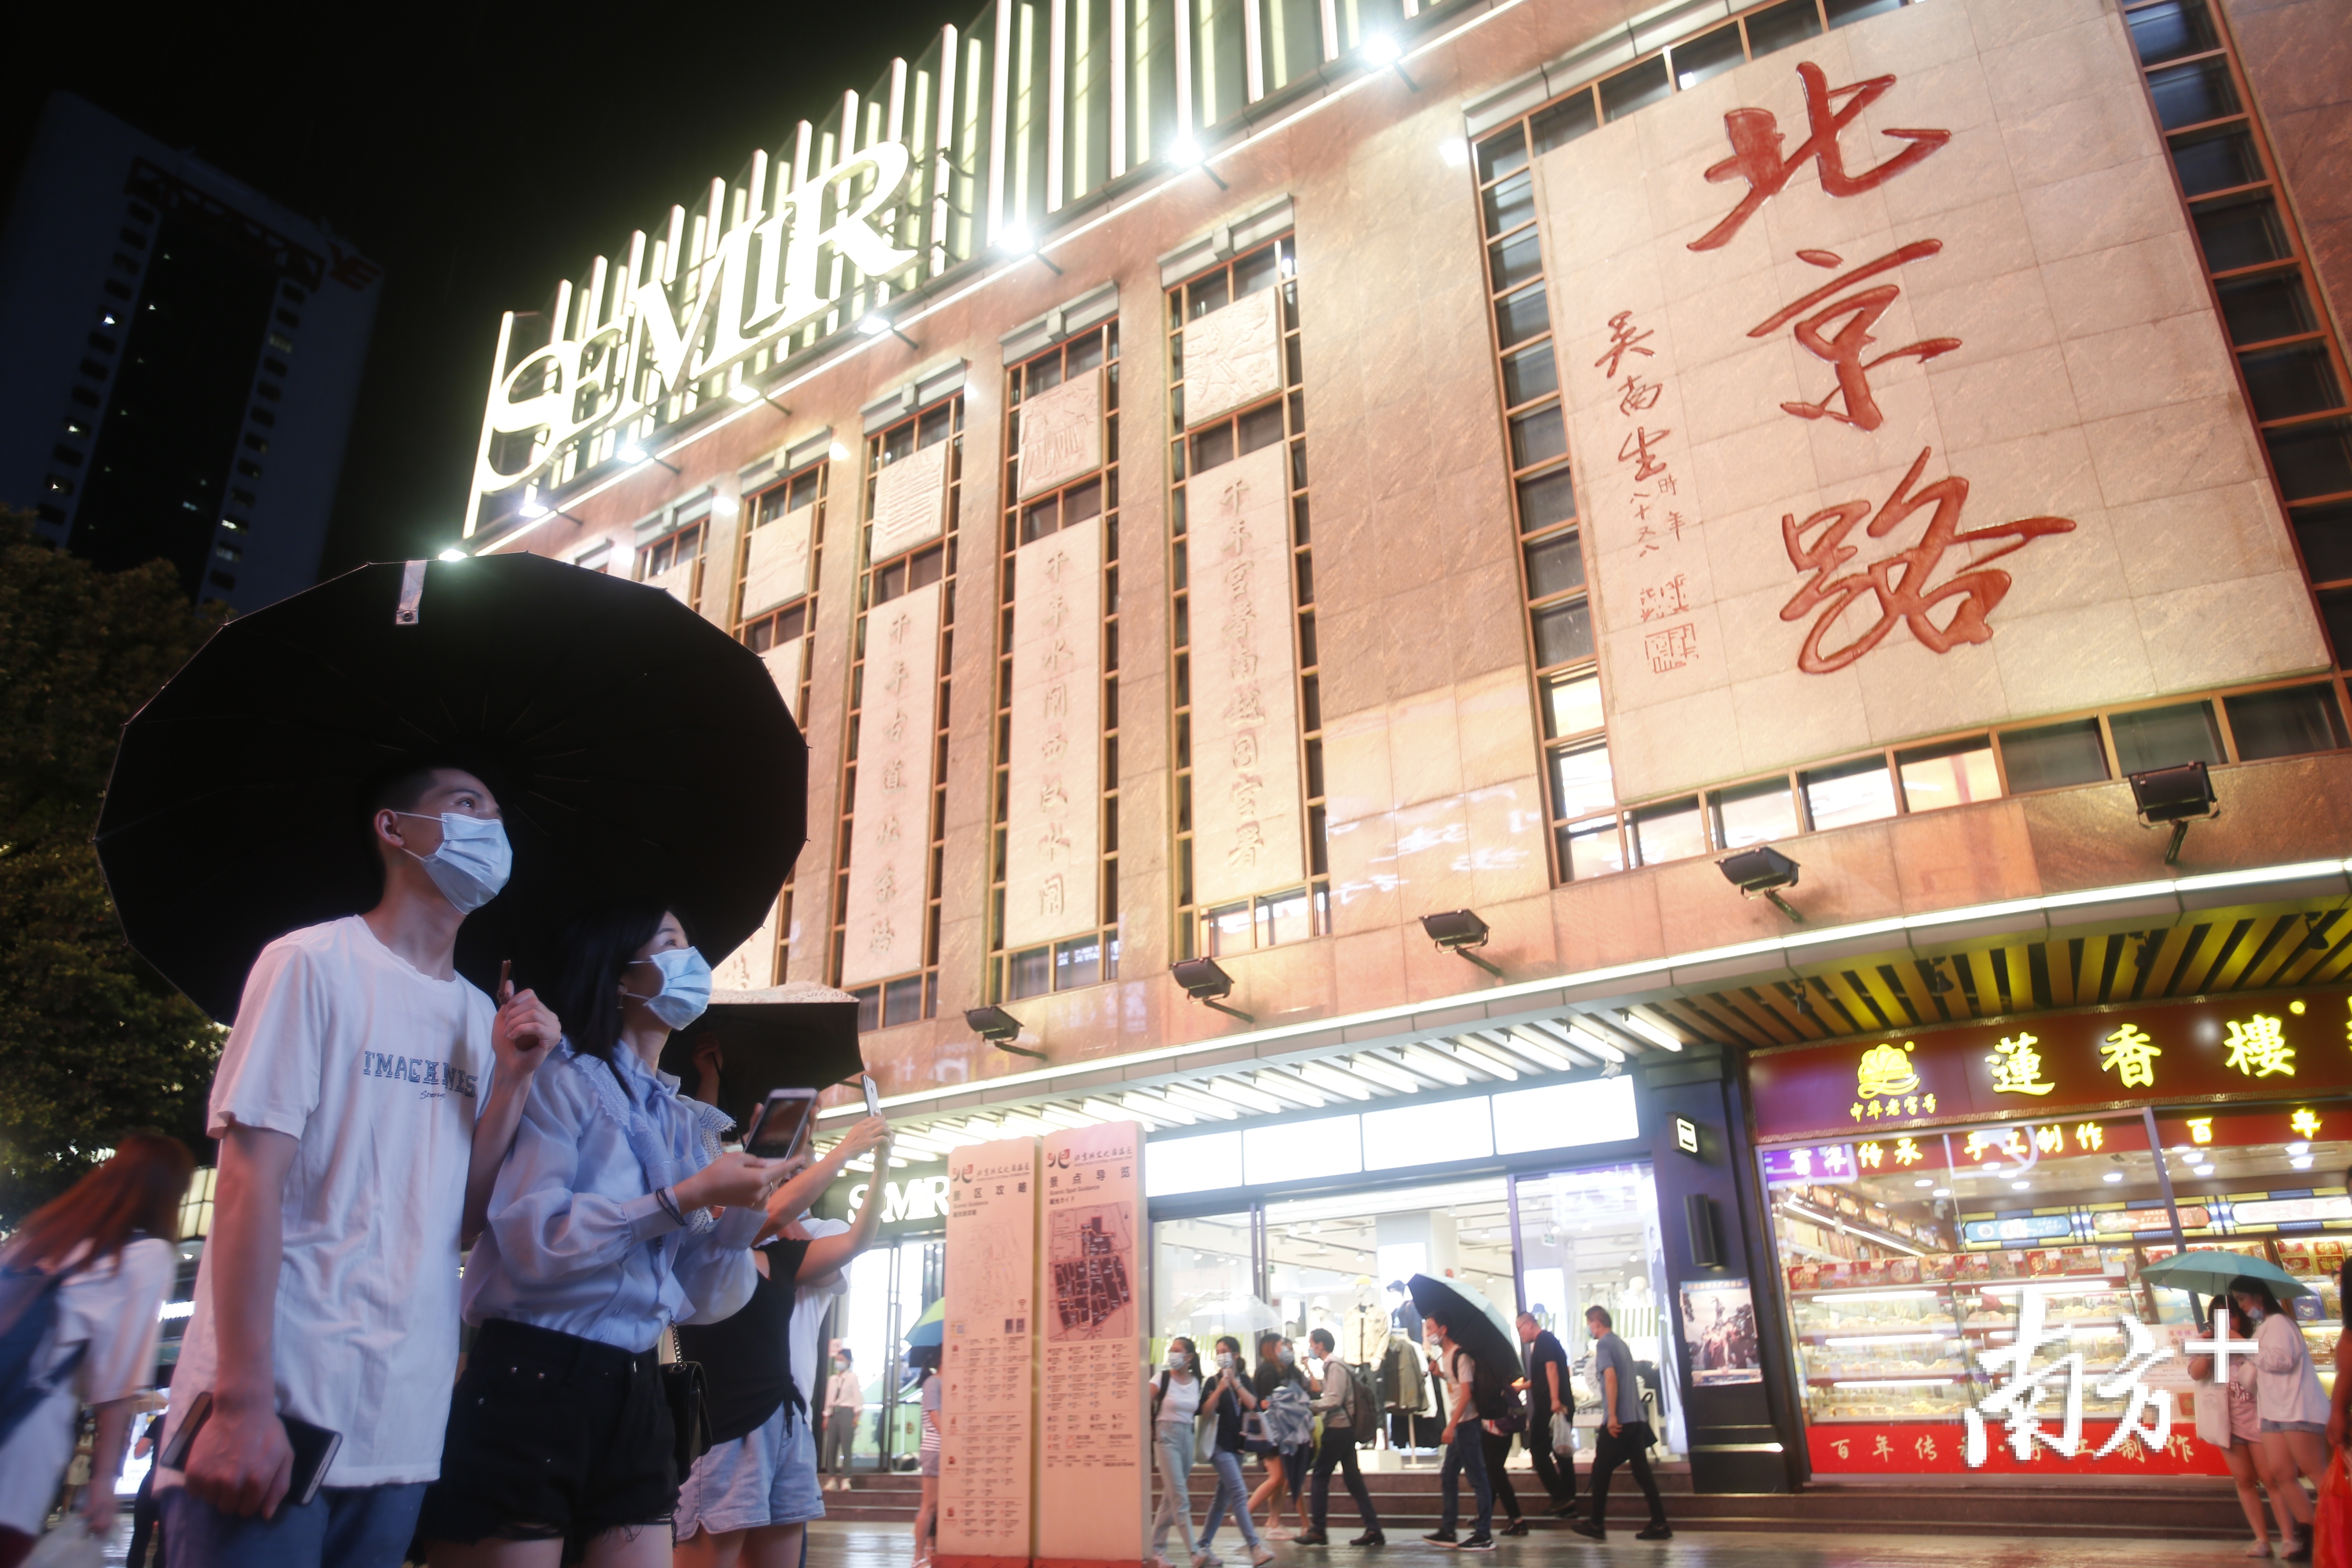 改造后的北京路，与故宫文创进行合作，打造京秀文创店。